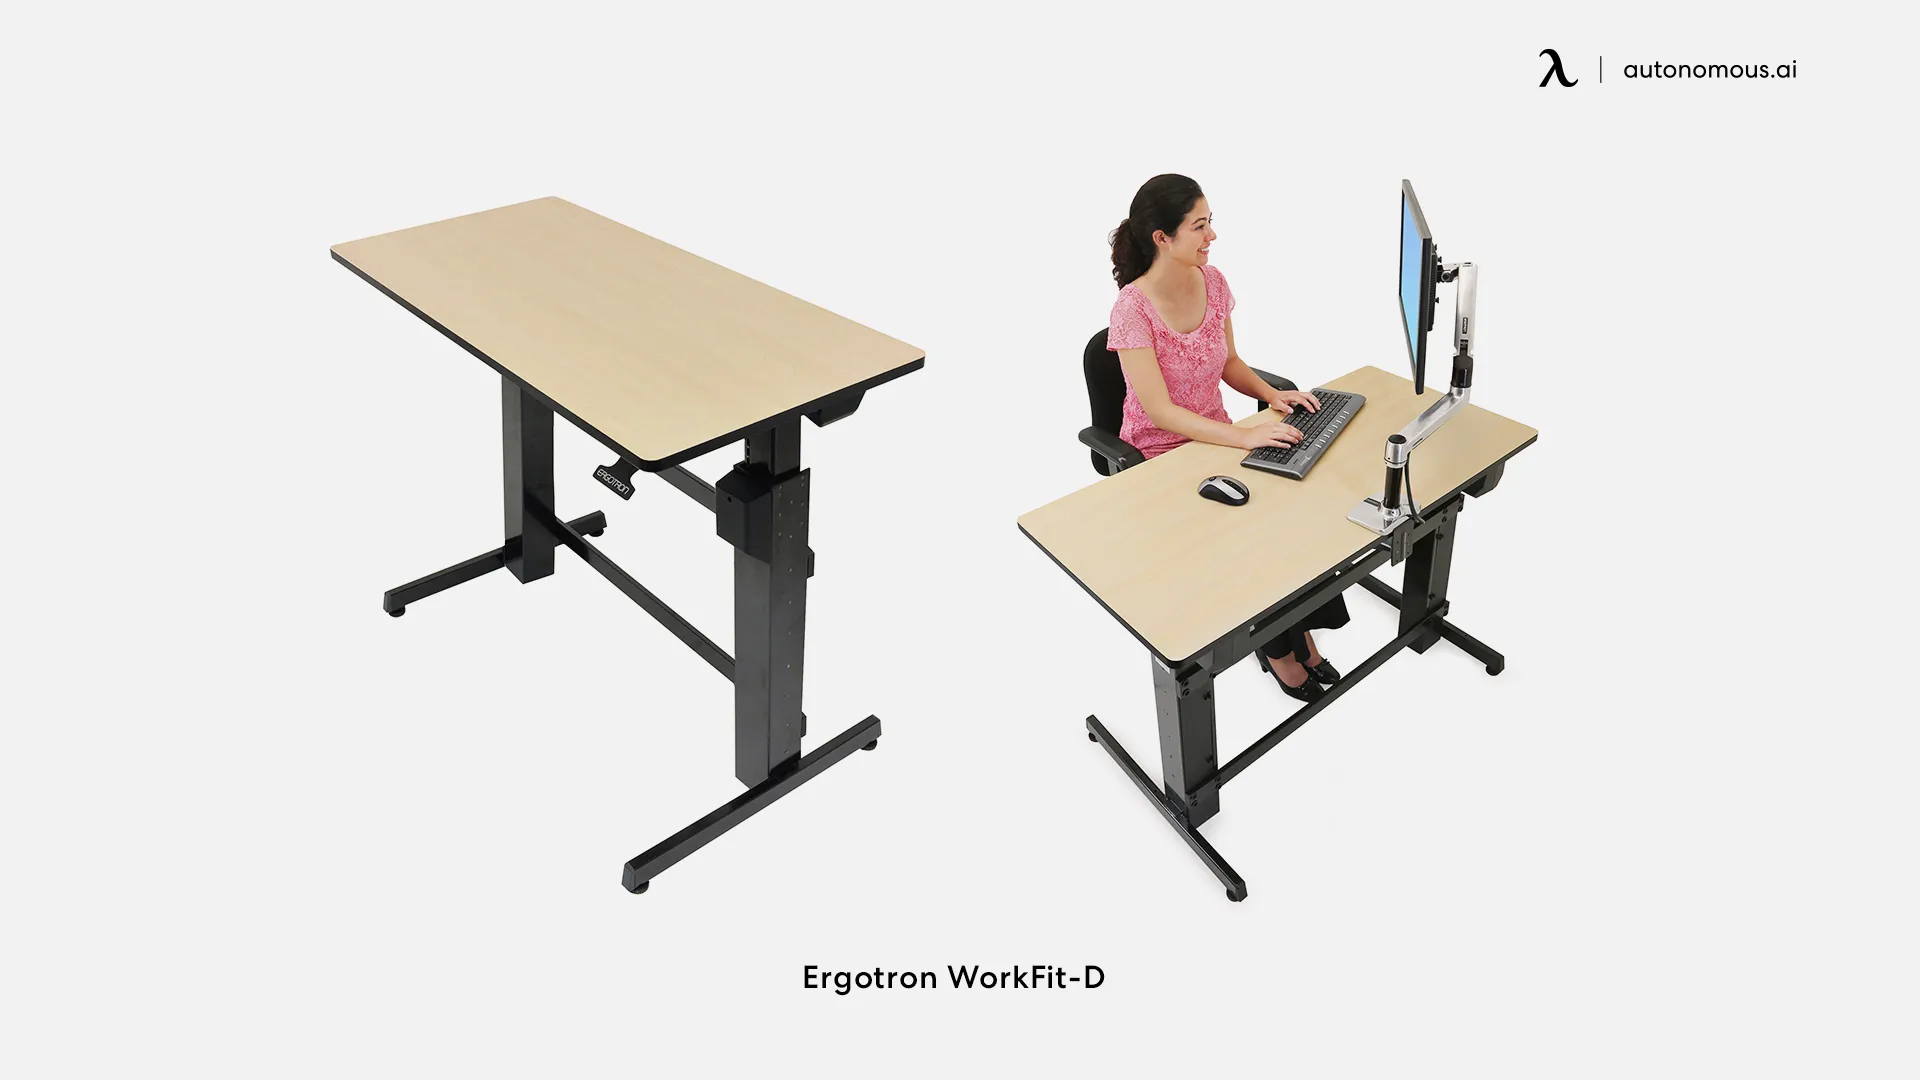 Ergotron WorkFit-D tall desk